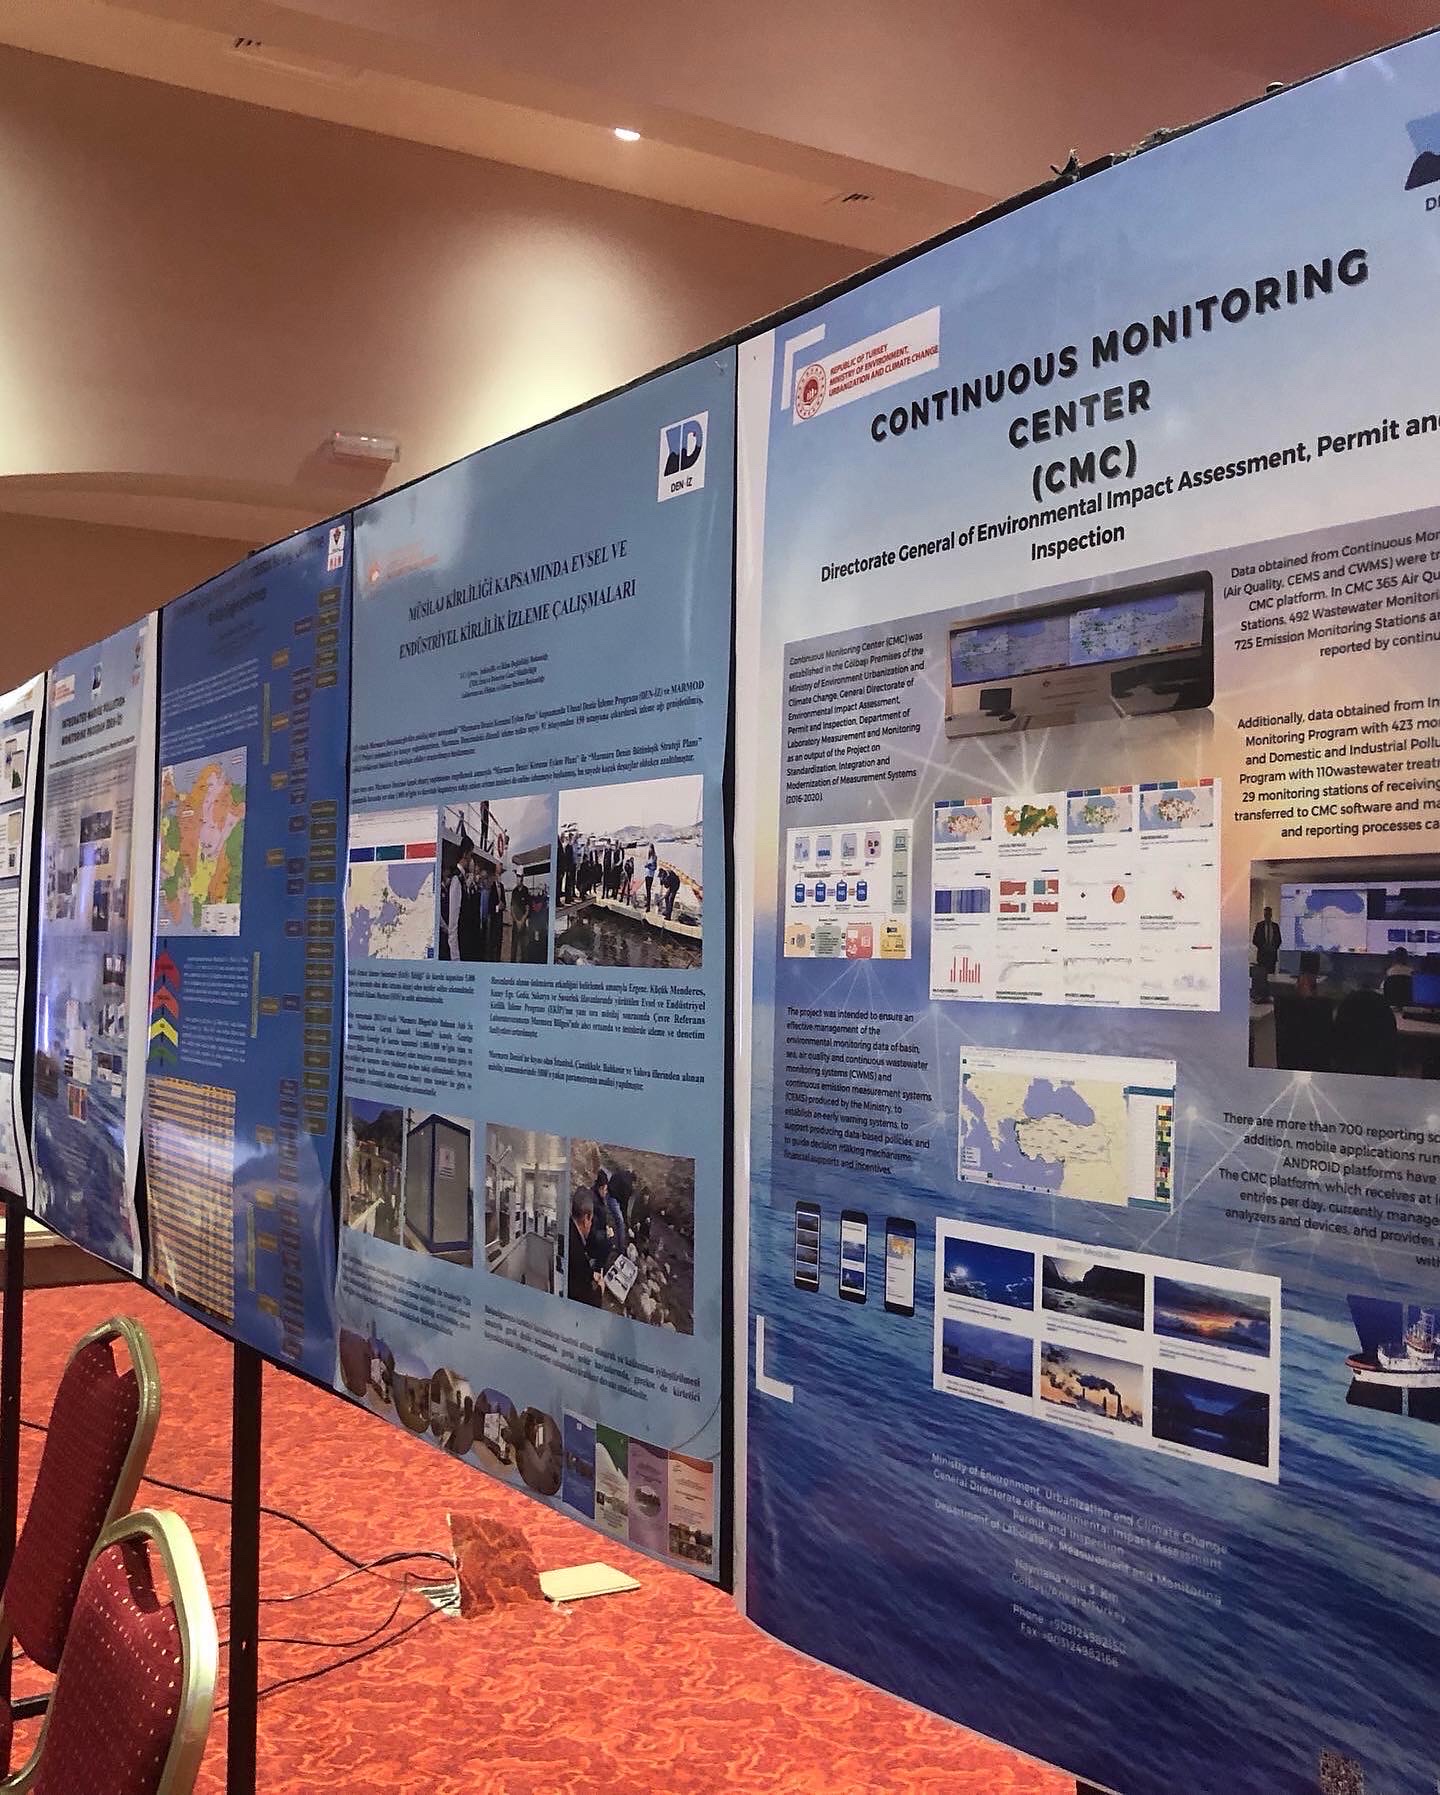 III. Ulusal Denizlerde İzleme ve Değerlendirme Sempozyumu 06-09 Aralık 2022 tarihinde Antalya’da düzenlendi